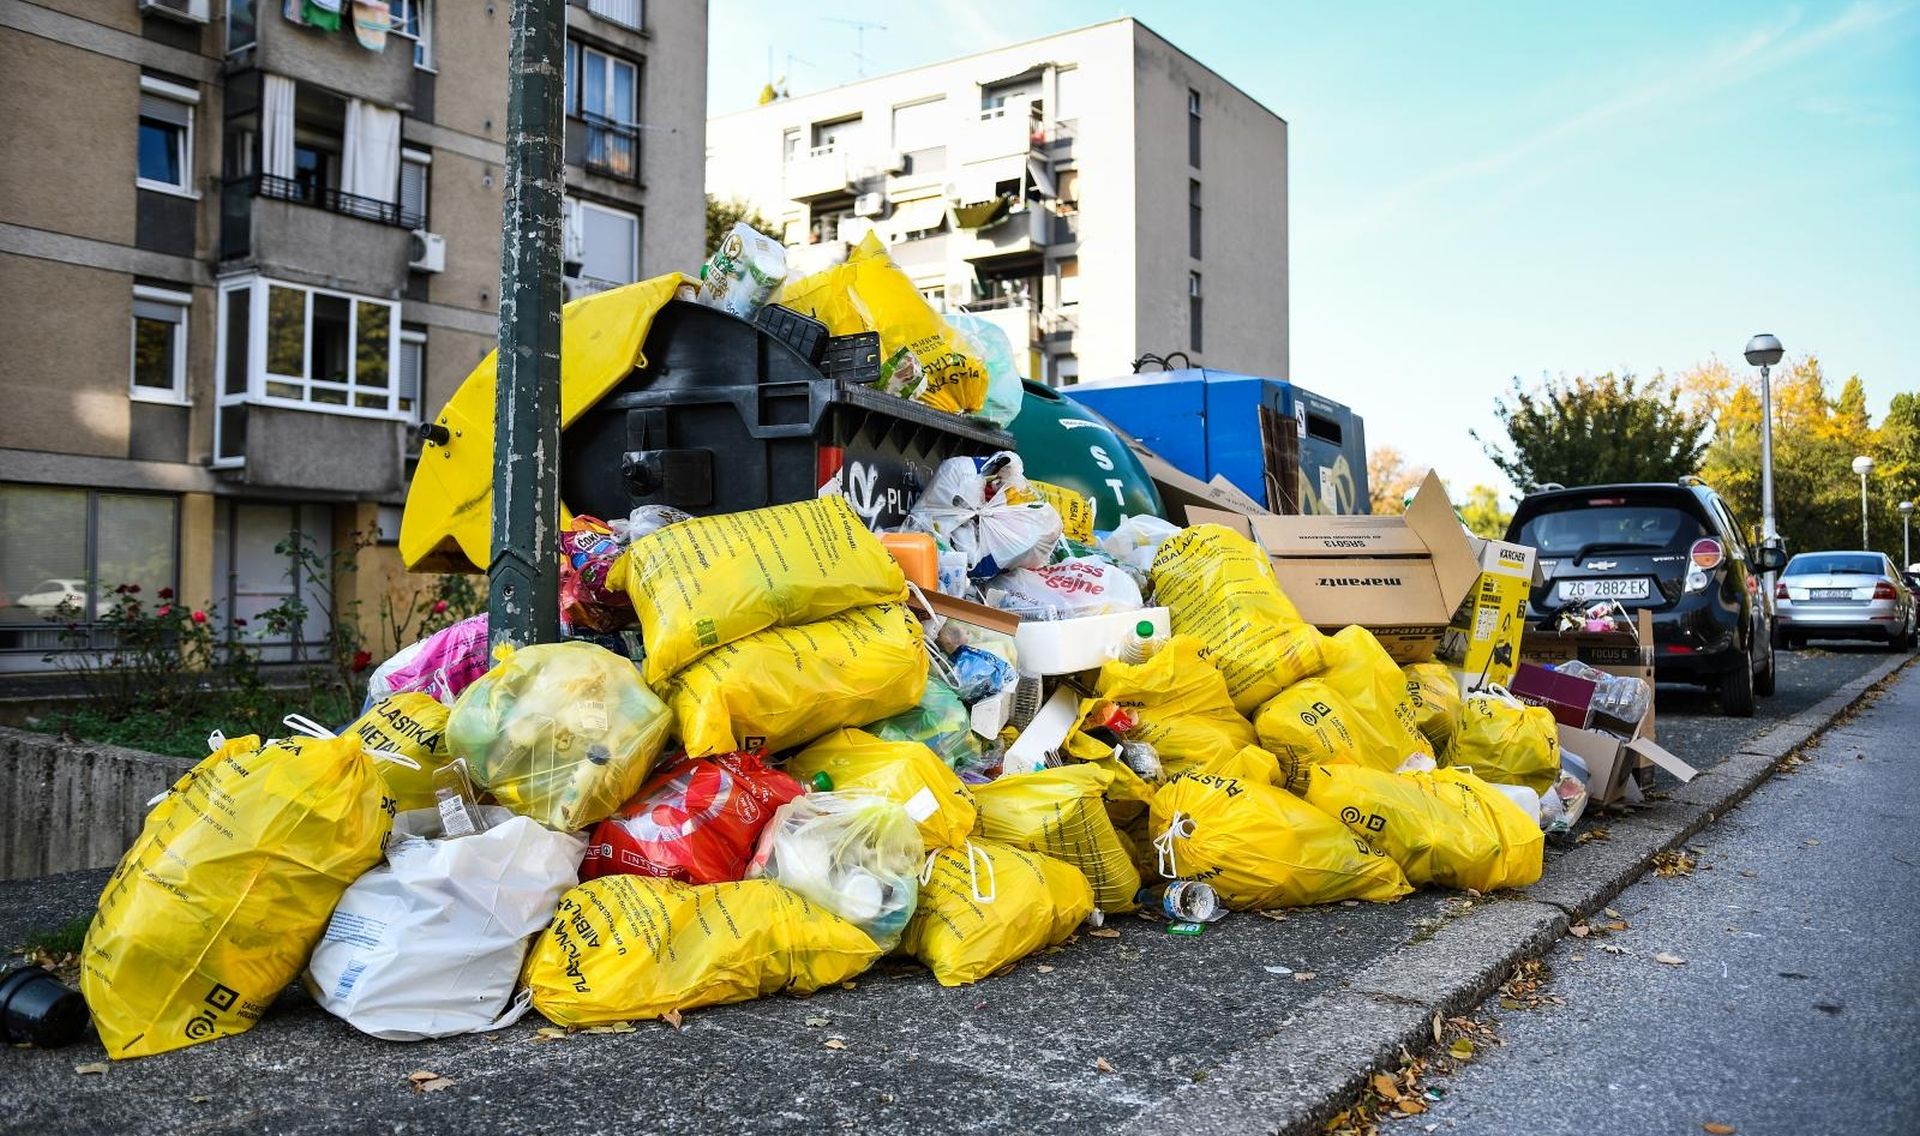 21.10.2019., Zagreb - Uobicajena slika zagrebackih kvartova zatrpanih smecem, dok se odvoz otpada i dalje obavlja 2 puta umjesto donedavnih 3 puta tjedno. Photo: Zoe Sarlija/PIXSELL